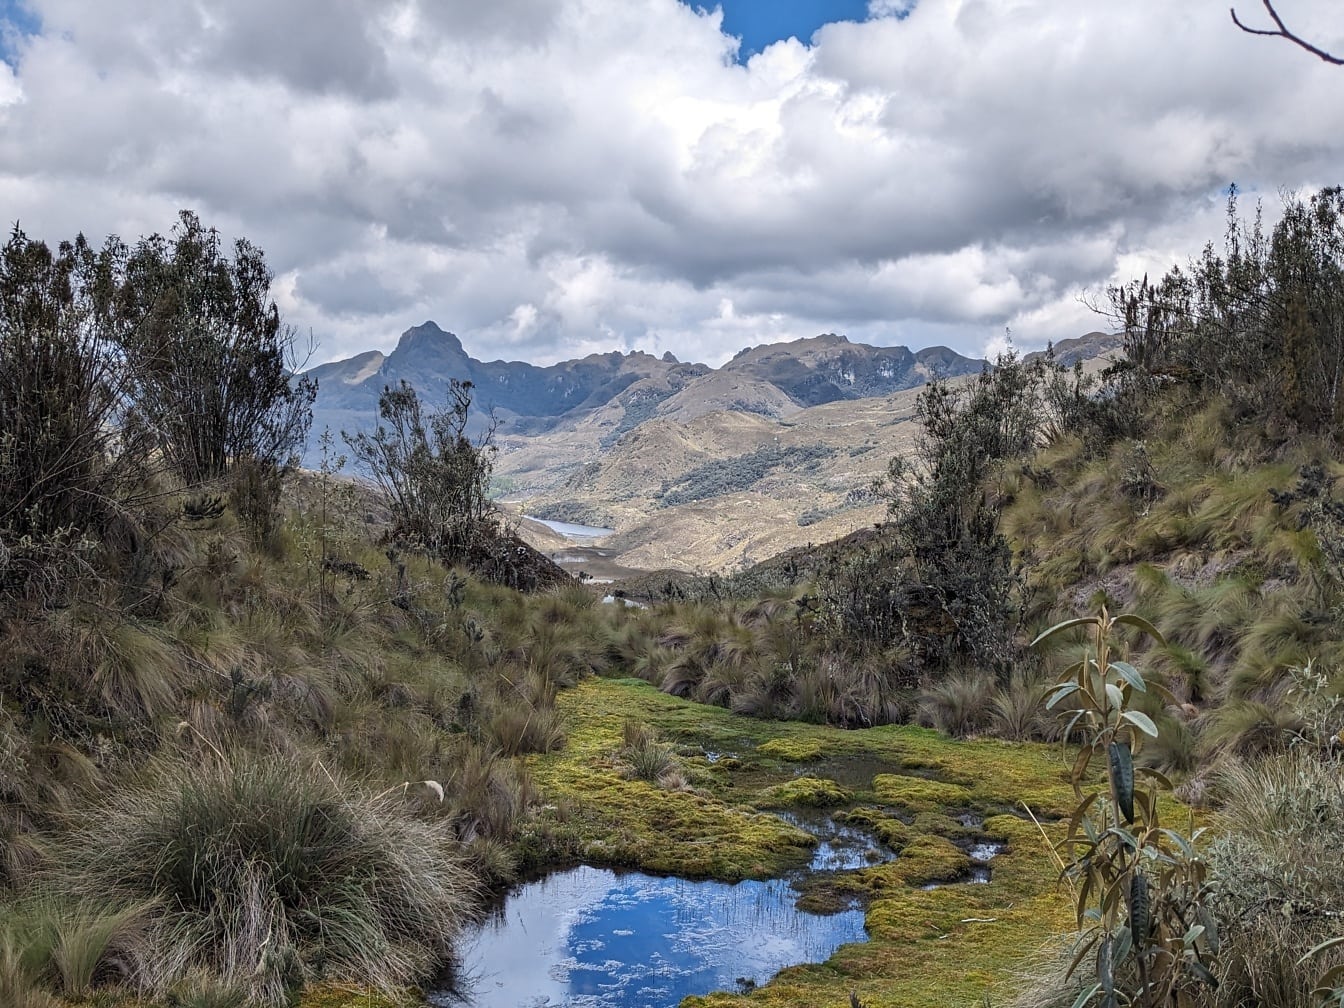 Aliran kecil di lembah dengan pegunungan di latar belakang di taman alam Cajes di Ekuador